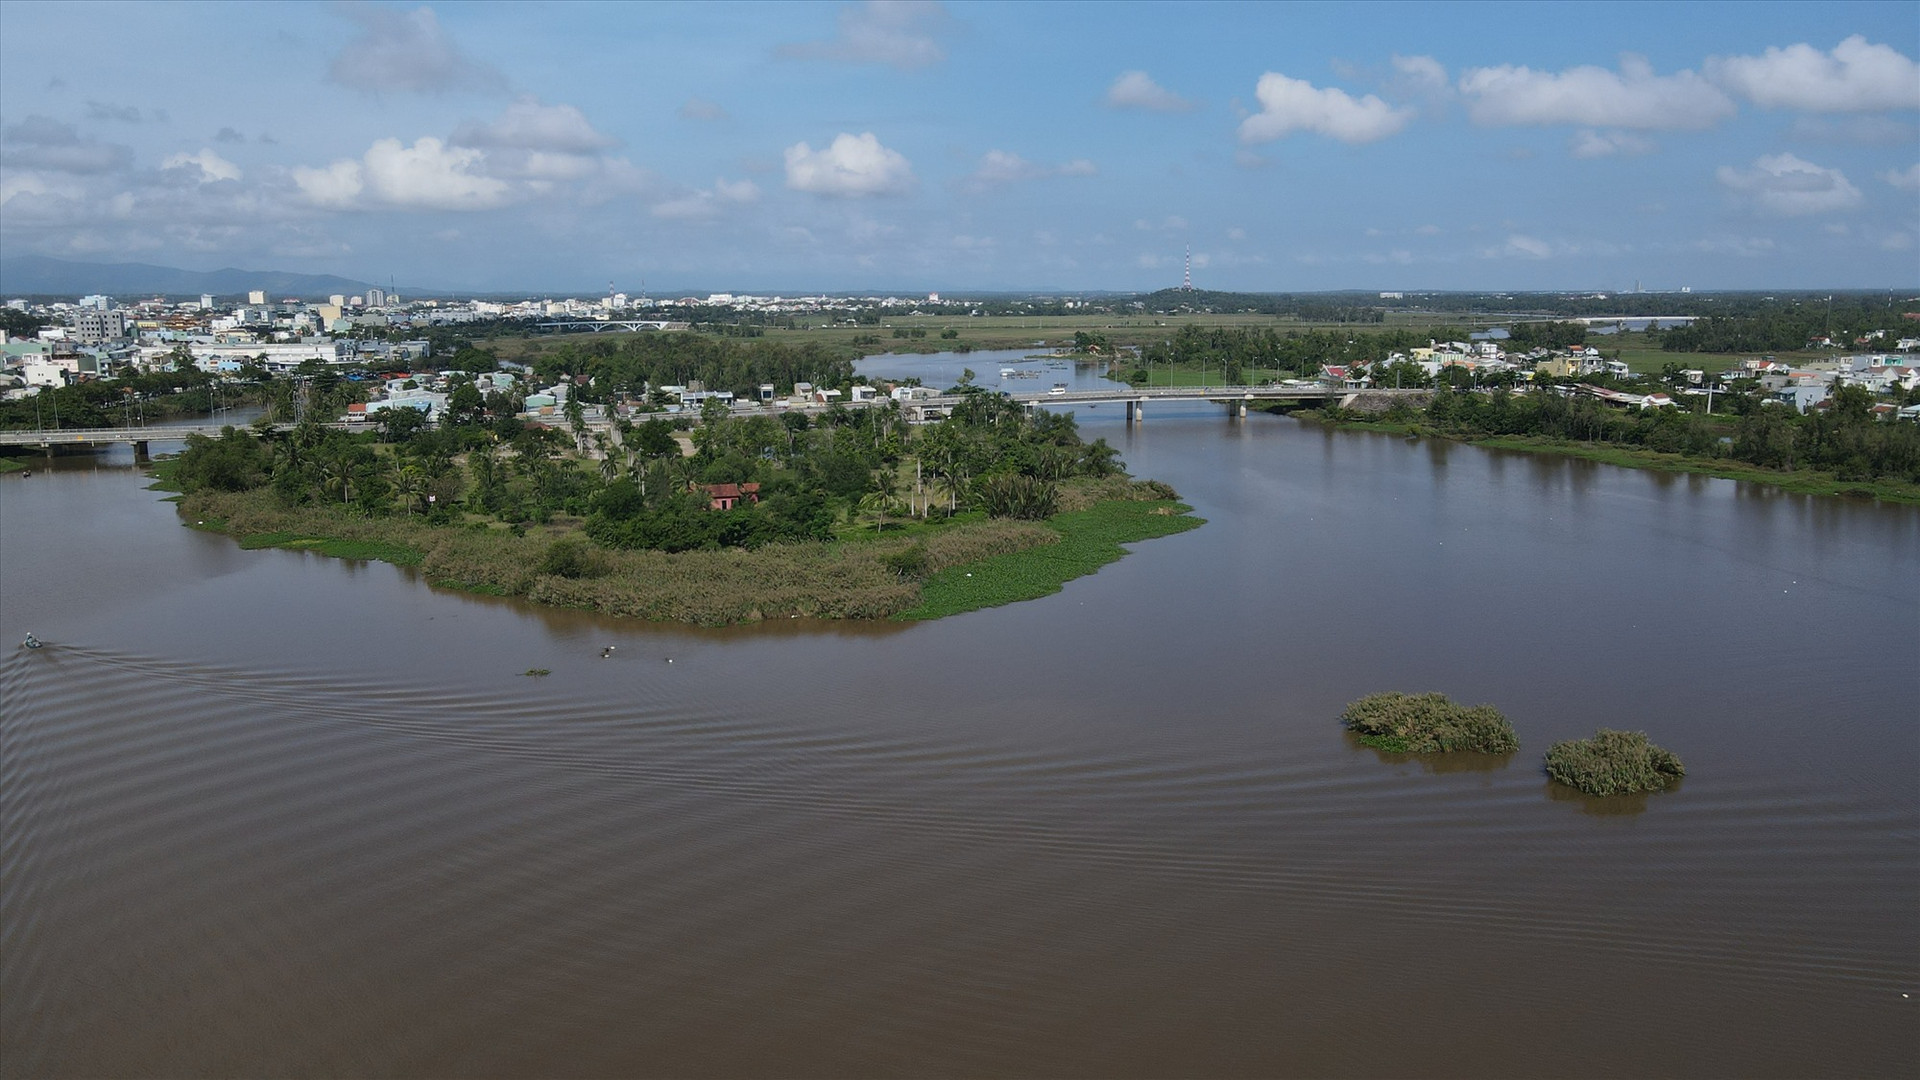 Khúc sông quanh Cồn Thị vẫn luôn là địa điểm quen thuộc của người cào lươn suốt nhiều năm nay. Ảnh: T.L